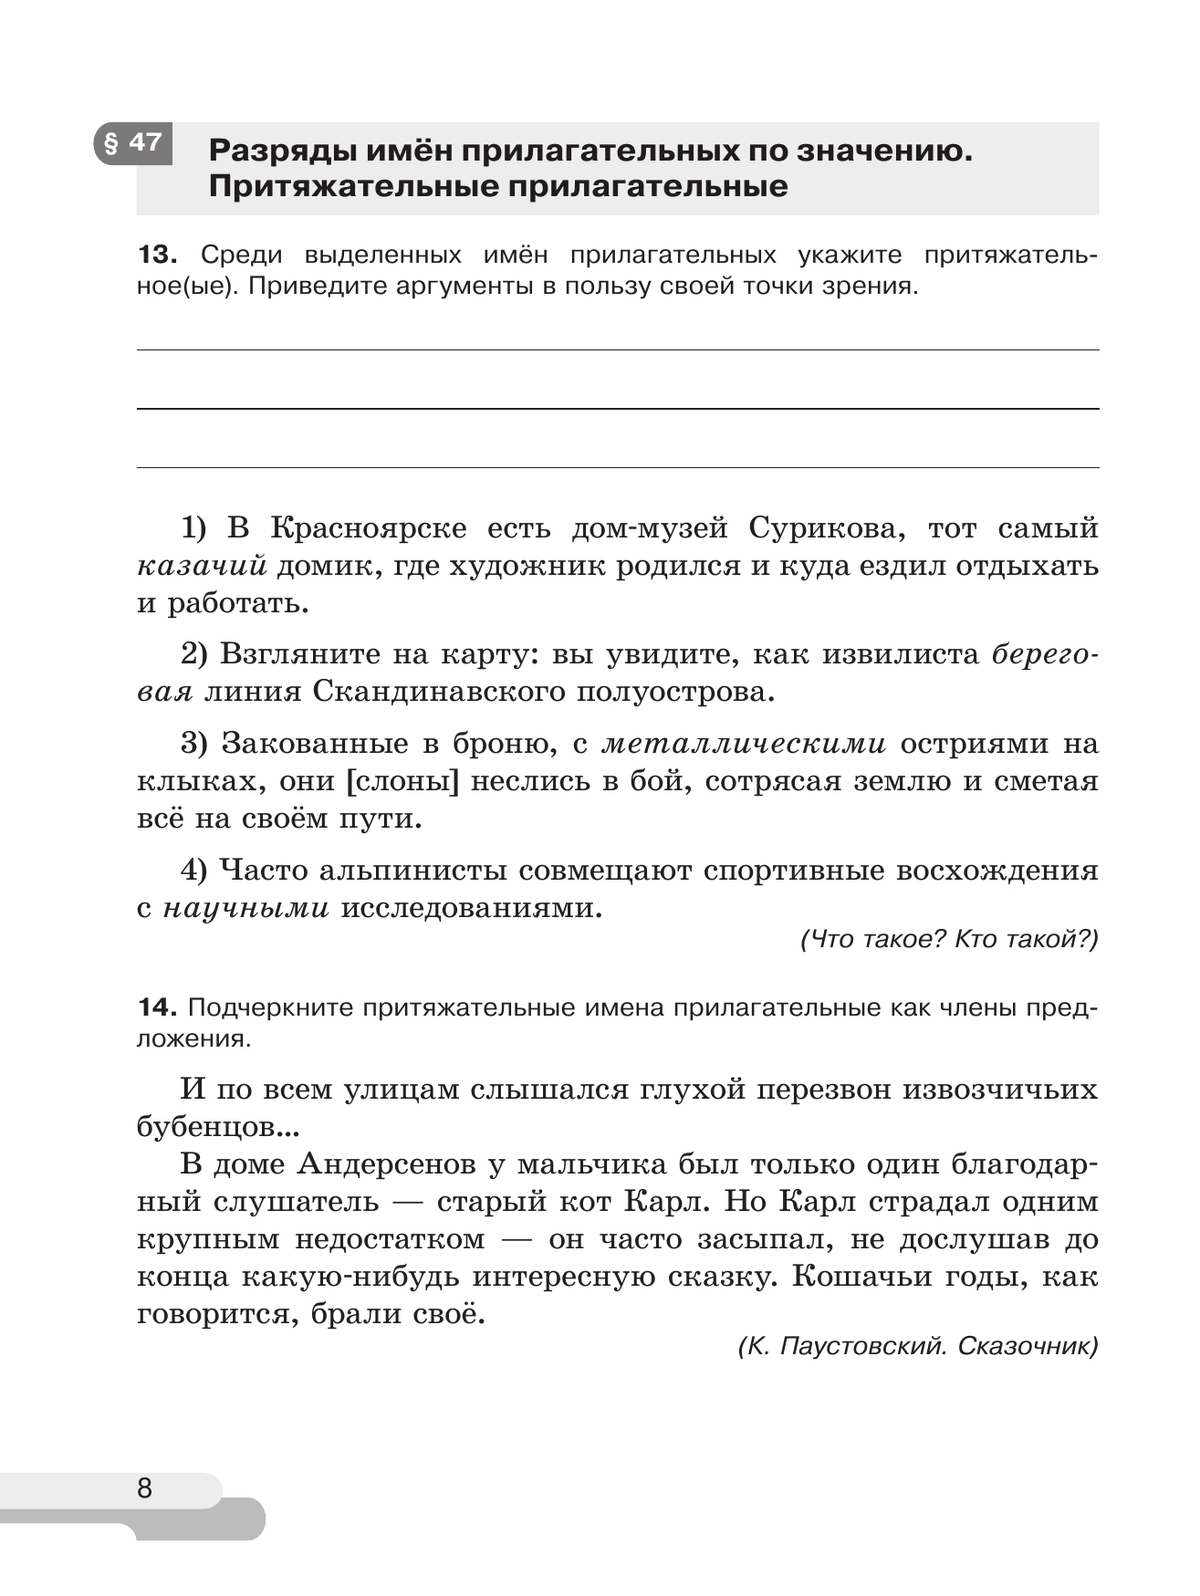 Русский язык. 6 класс. В 2 ч. Часть 2. Рабочая тетрадь 6